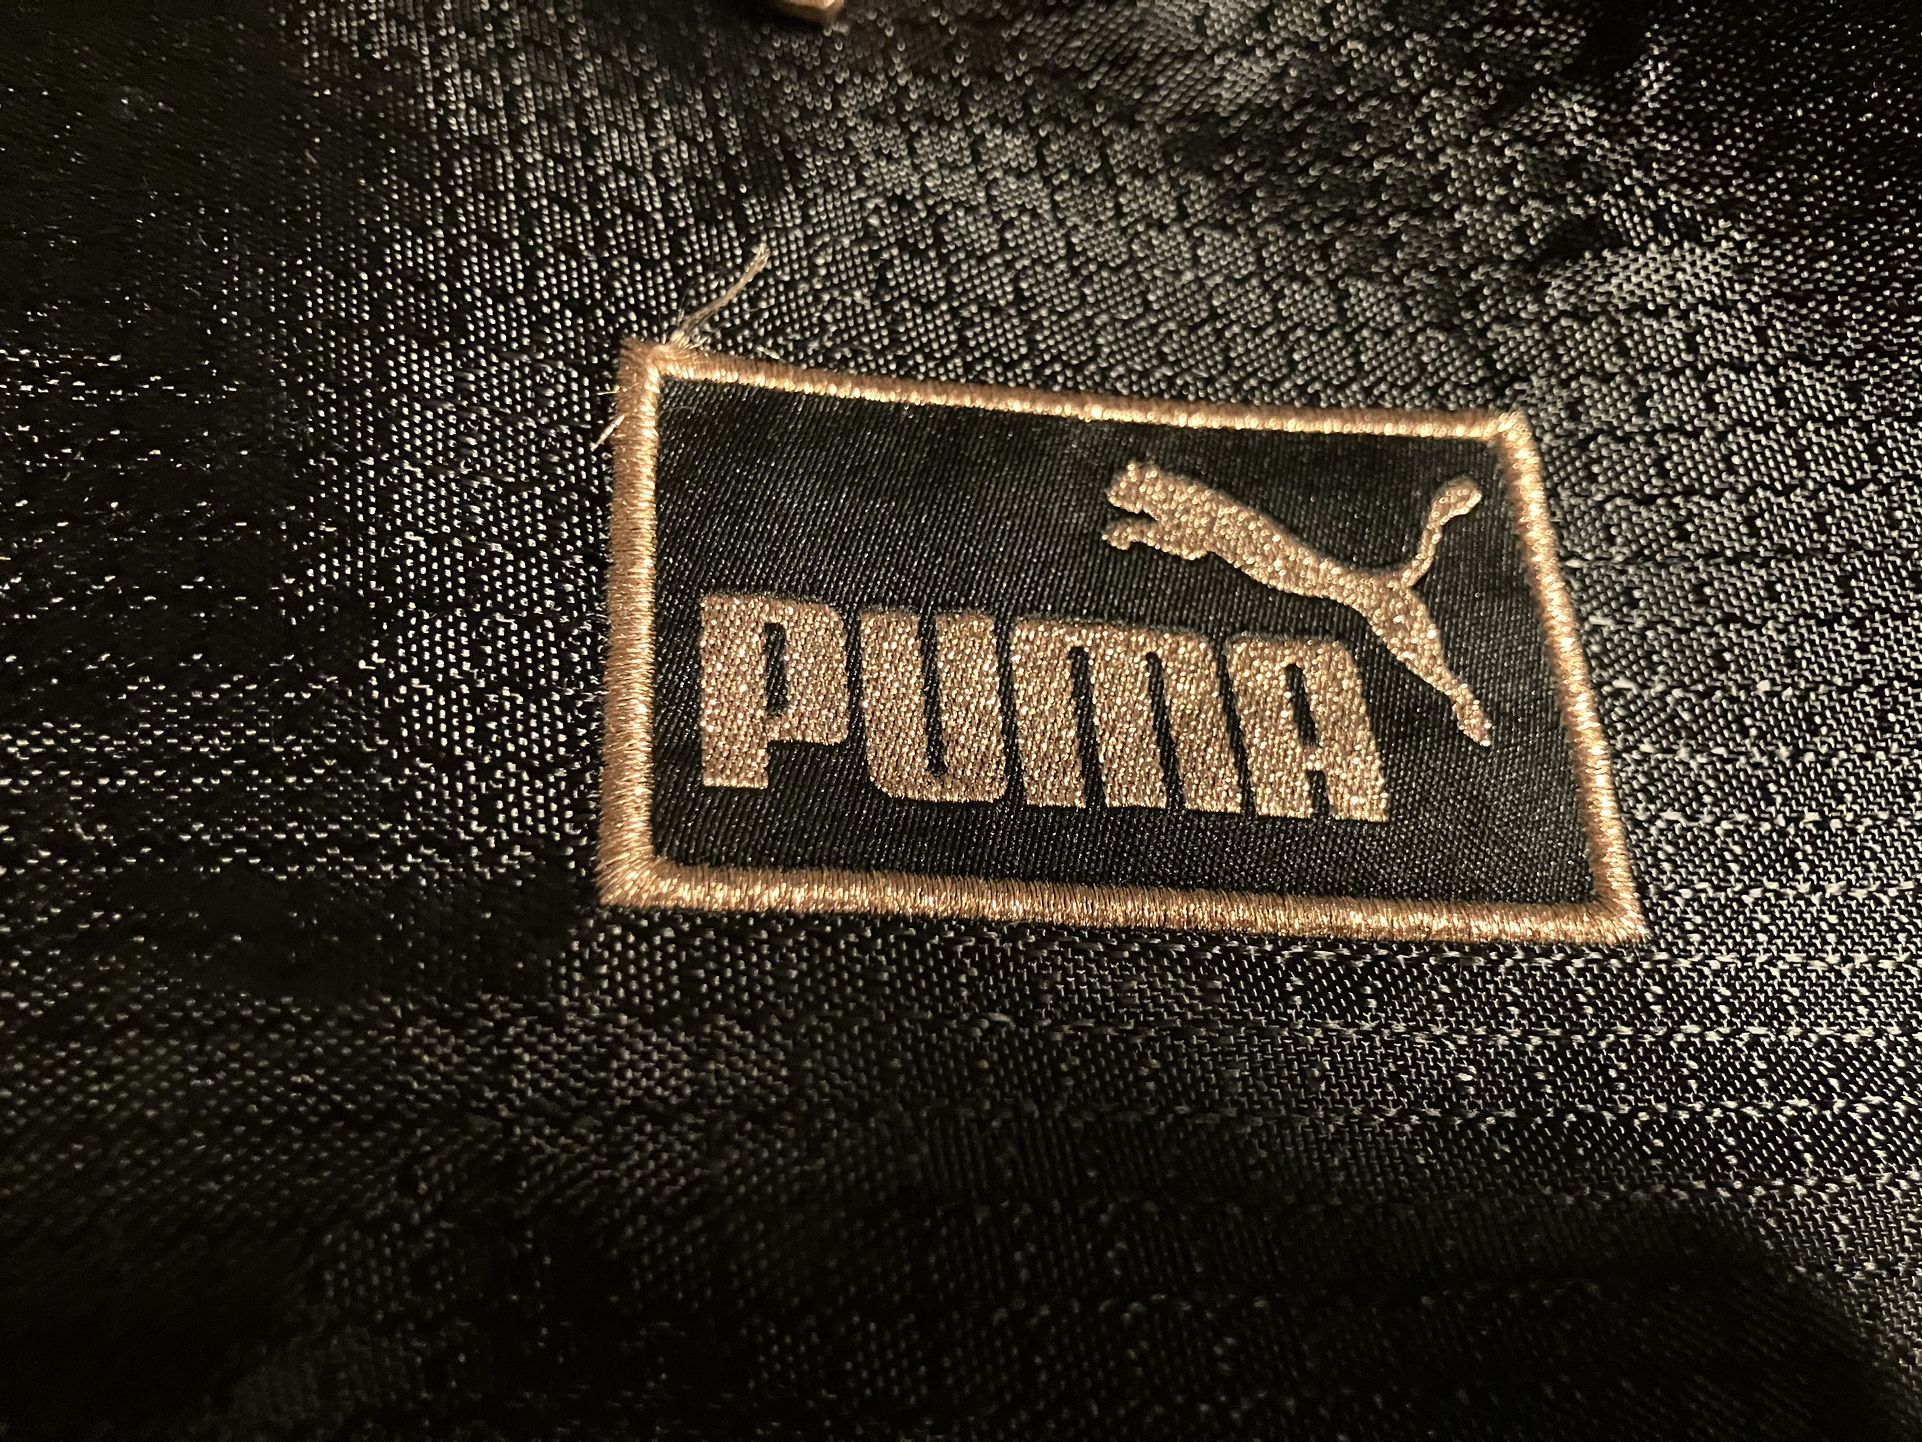 Puma Gym Bag 